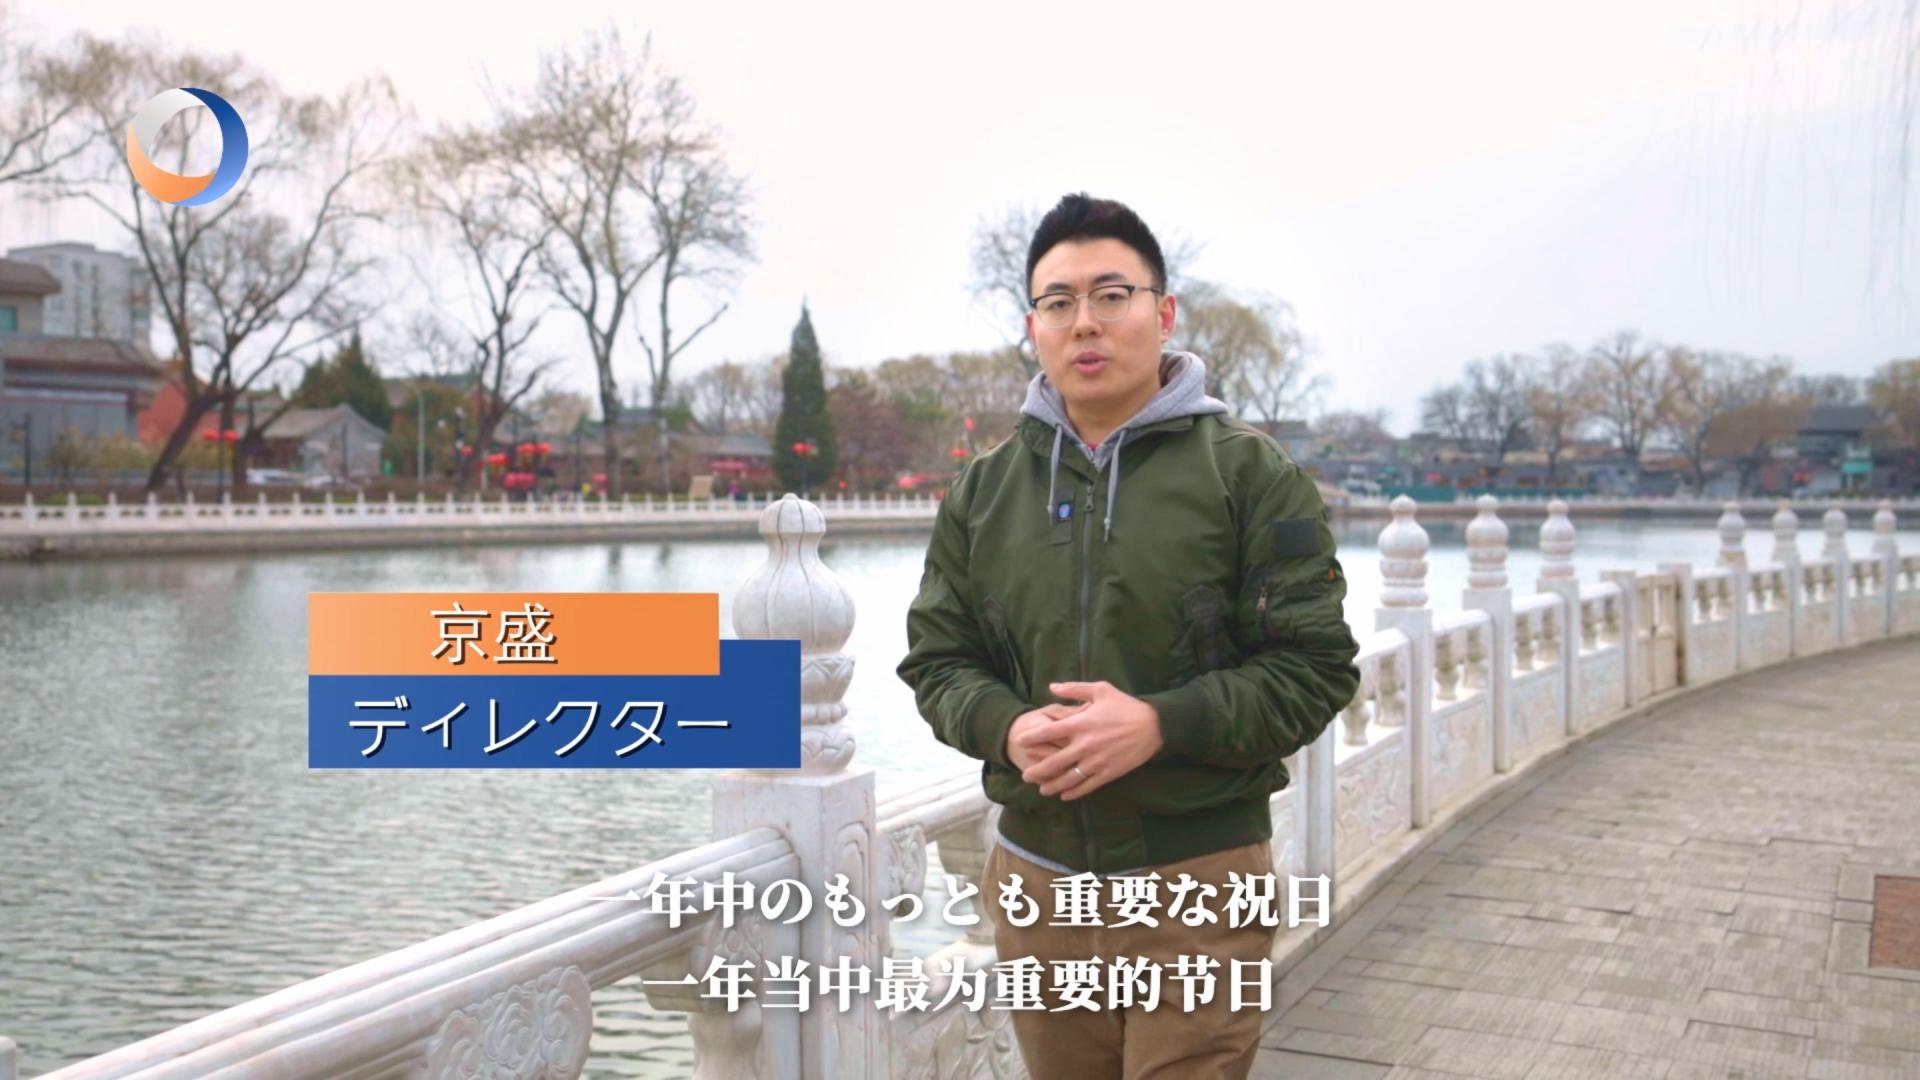 人民中国网-第三只眼看中国系列专题片《医生和外卖员的春节》